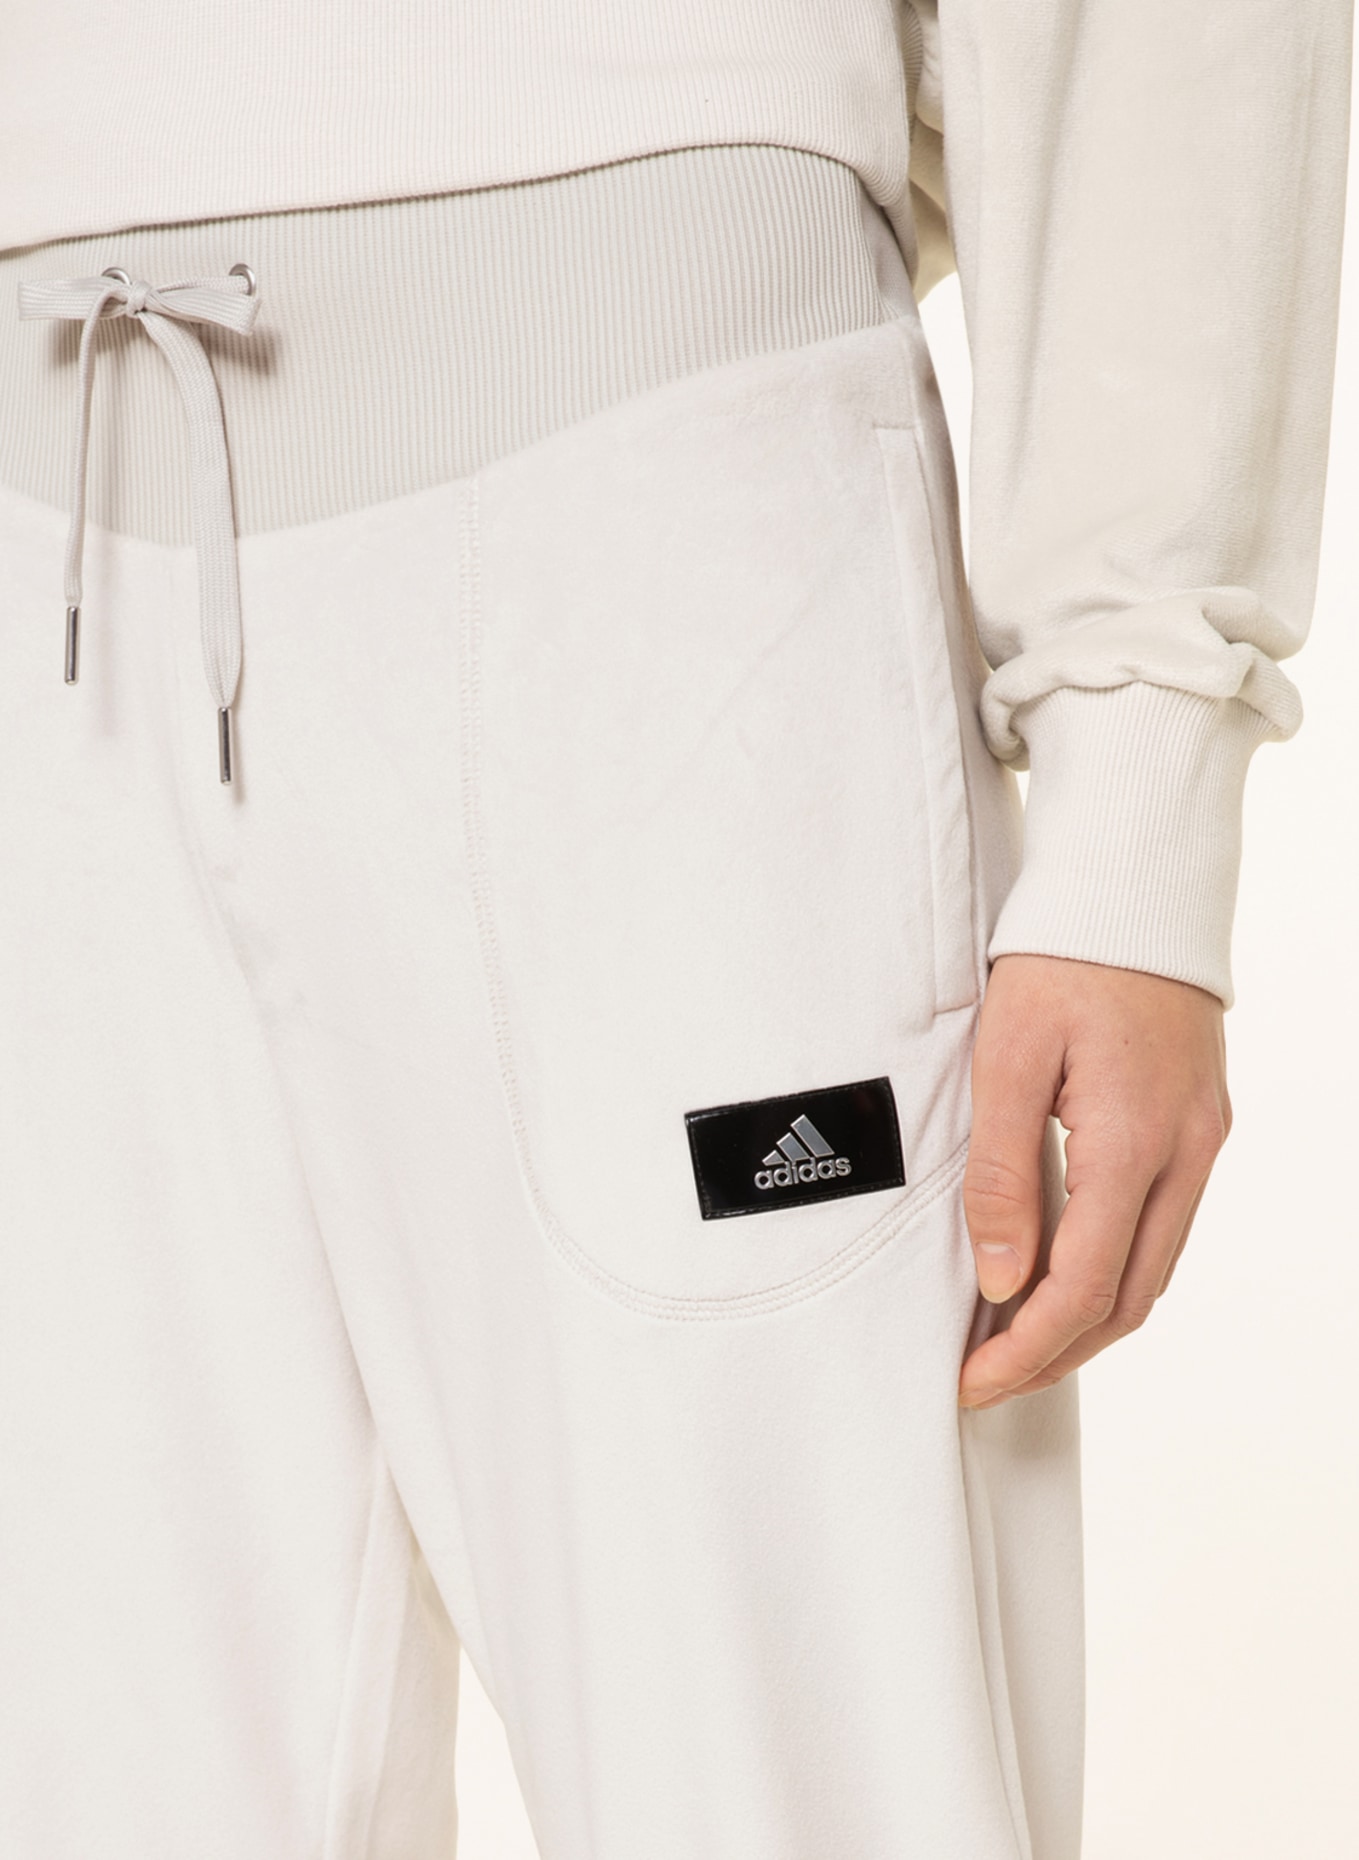 adidas Originals – Beckenbauer – Weiße Jogginghose mit 3 Streifen